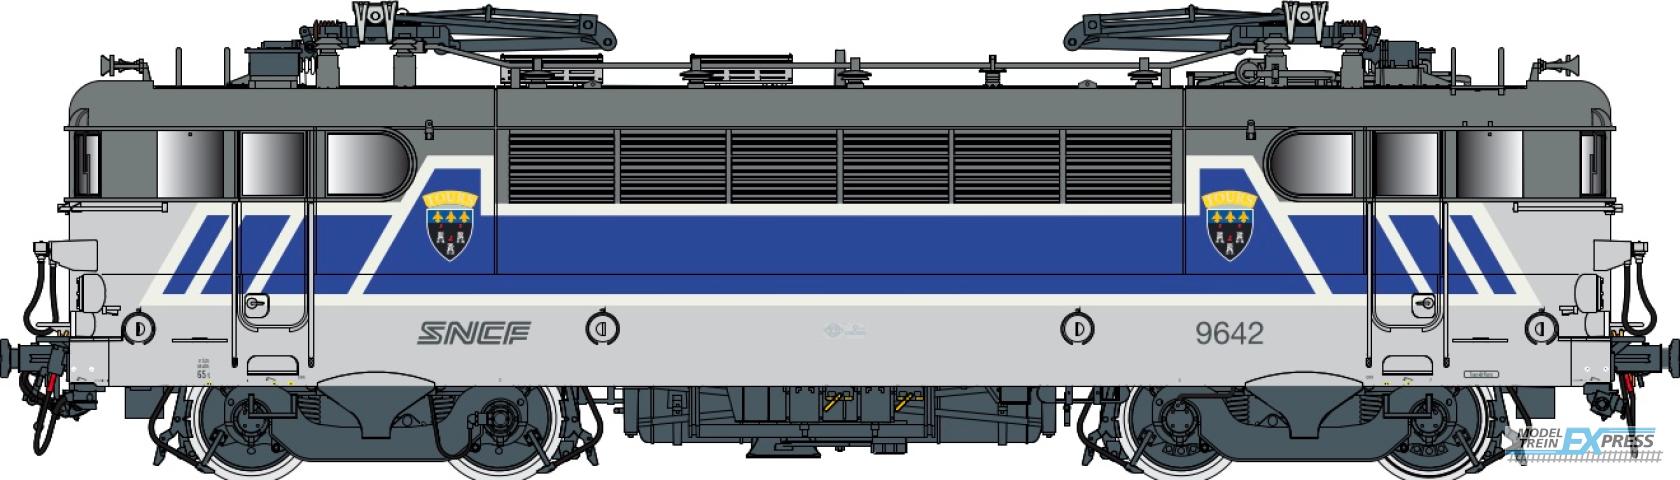 LS Models 10723 BB 9600, grijs/blauw/wit/oranje, Centre, noedels logo  /  Ep. V  /  SNCF  /  HO  /  AC  /  1 P.